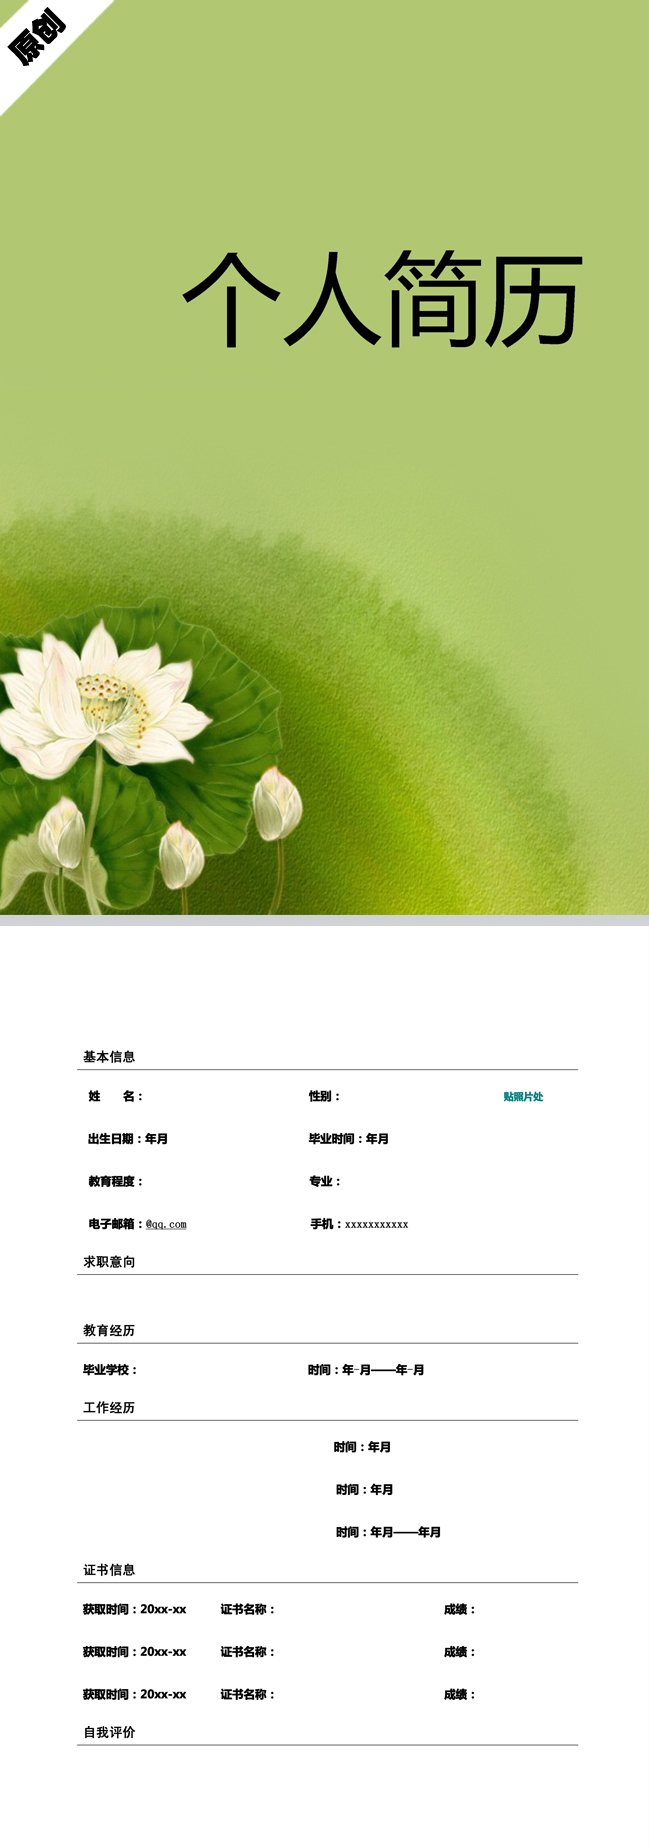 非常棒的翠綠蓮花免費個人履歷表模板